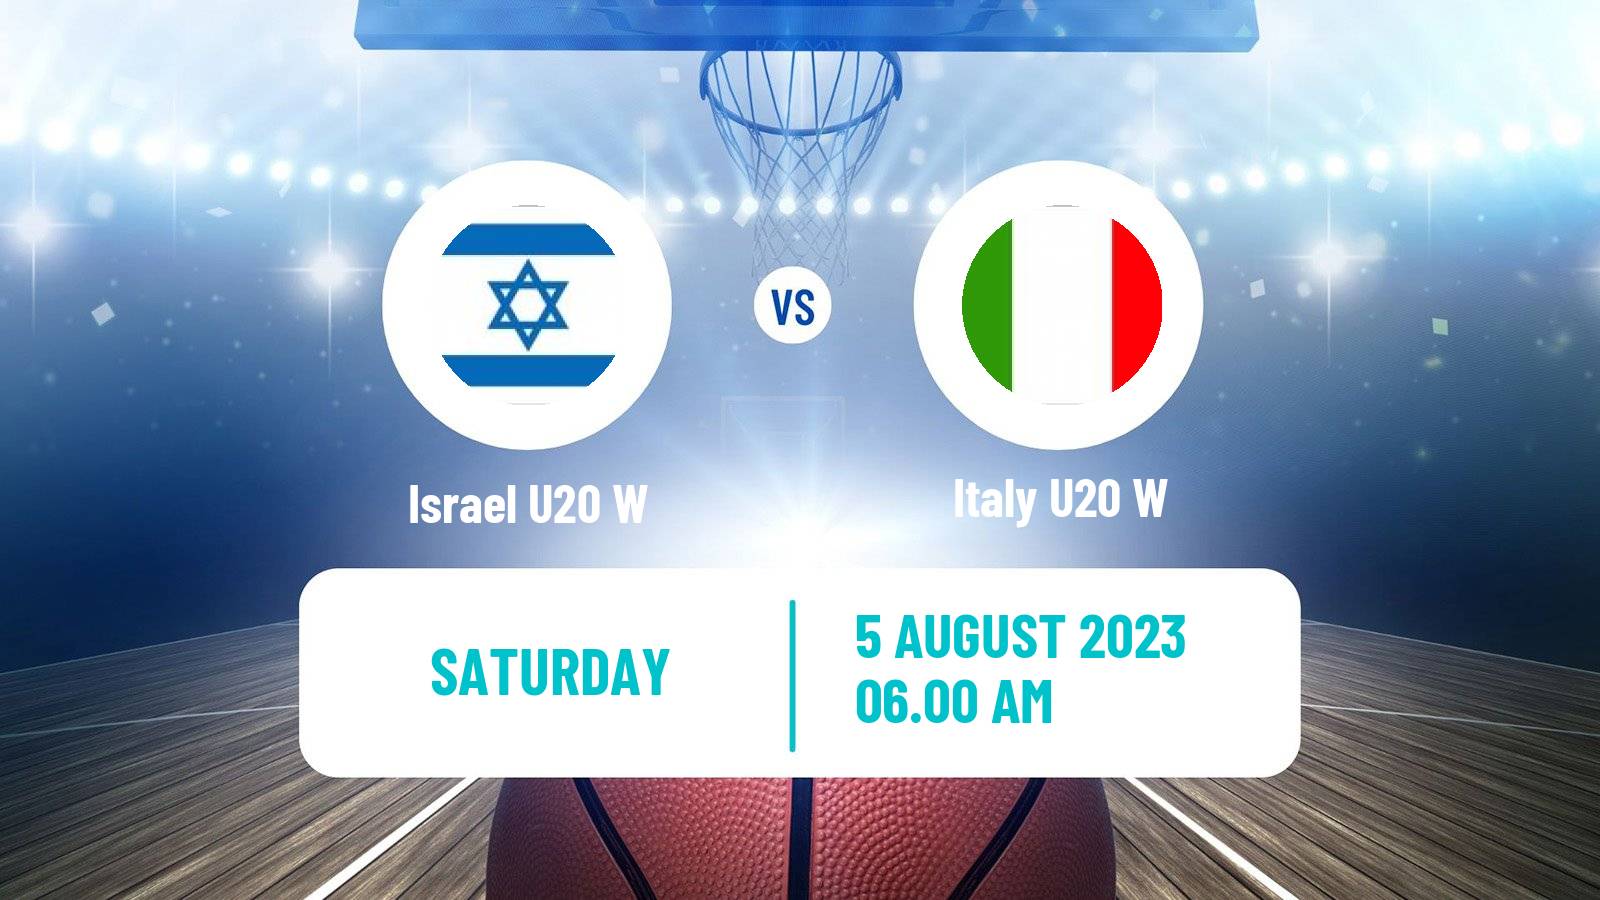 Basketball European Championship U20 Basketball Women Israel U20 W - Italy U20 W